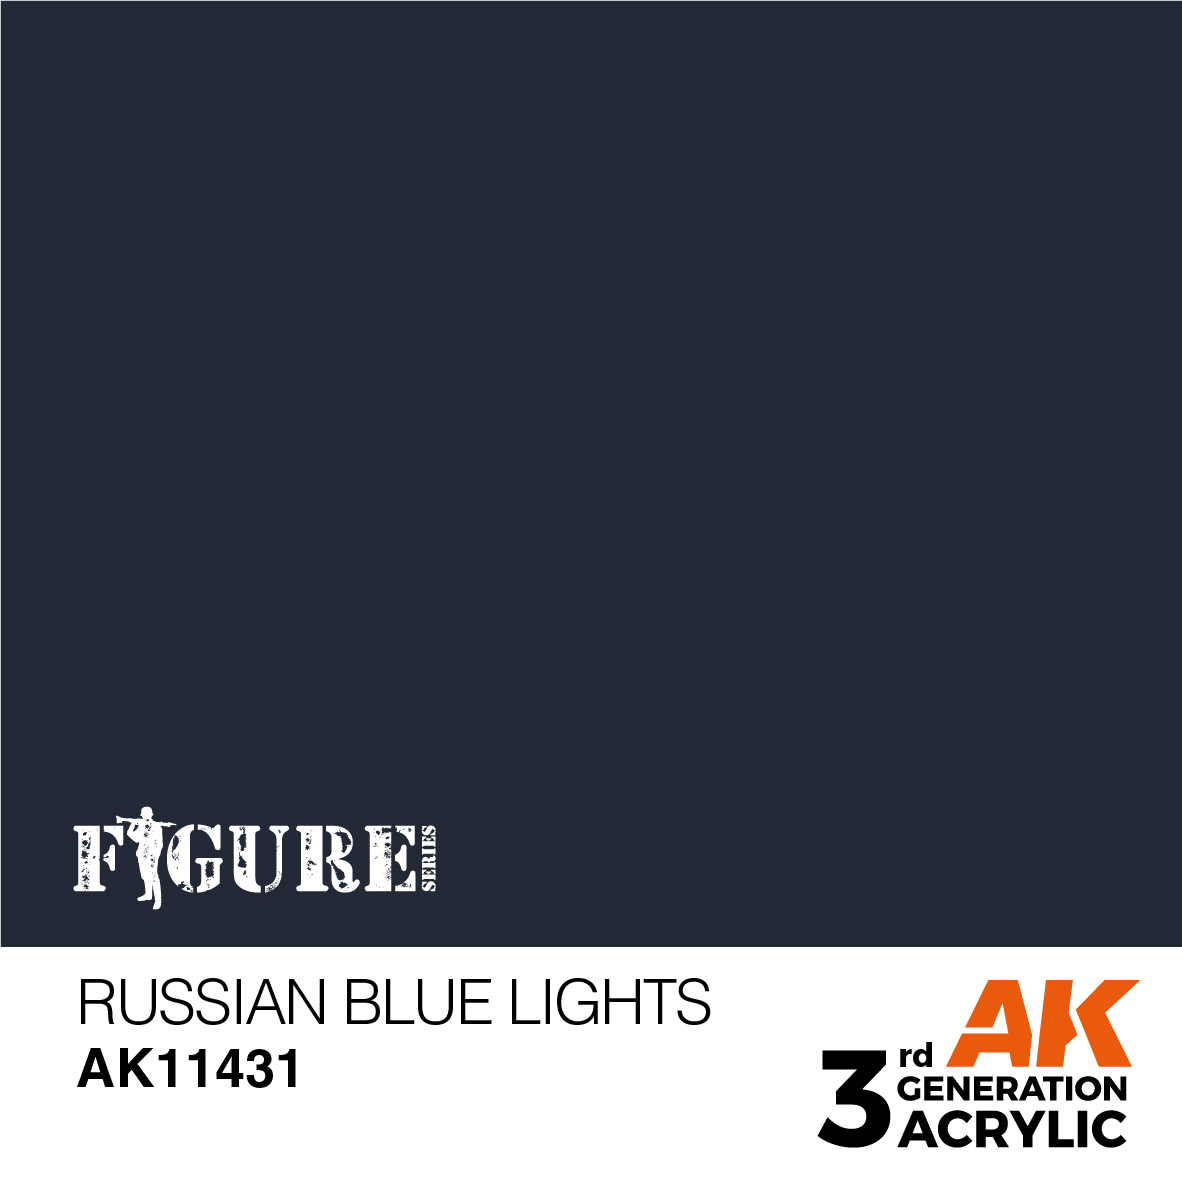 Russian Blue Lights – Figures